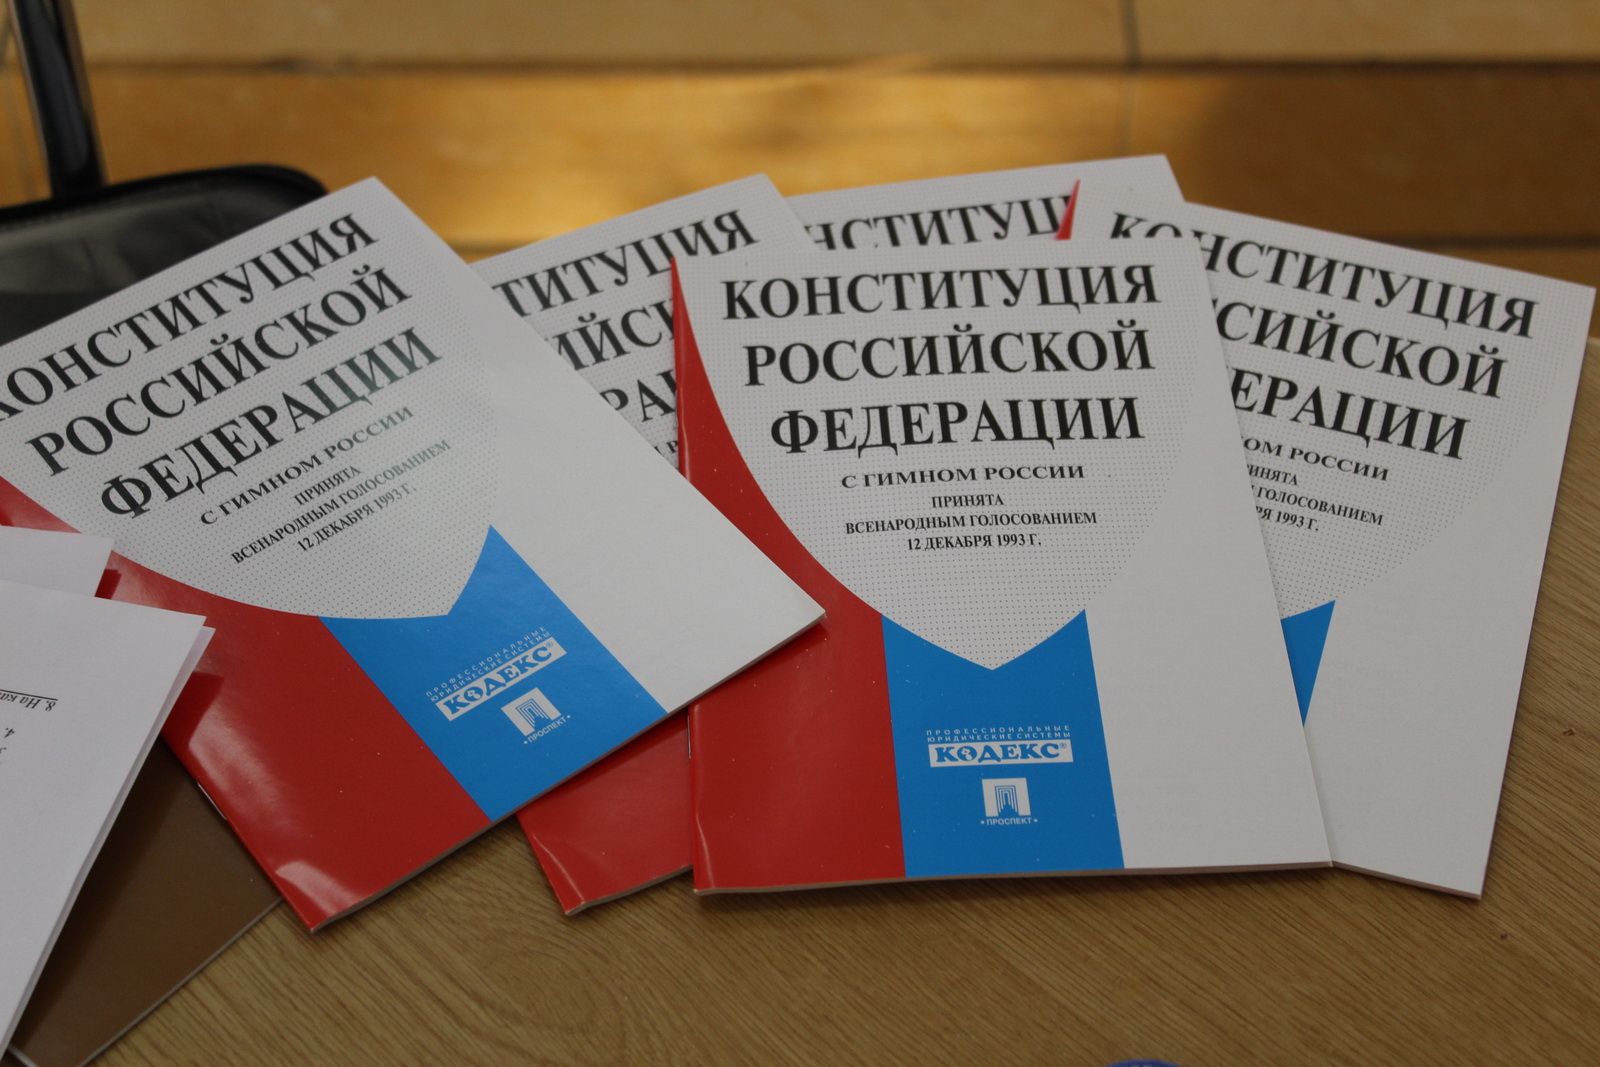 «Документ с интересной историей»: в Ульяновске обсудили правовое просвещение и открыли новый правовой Центр